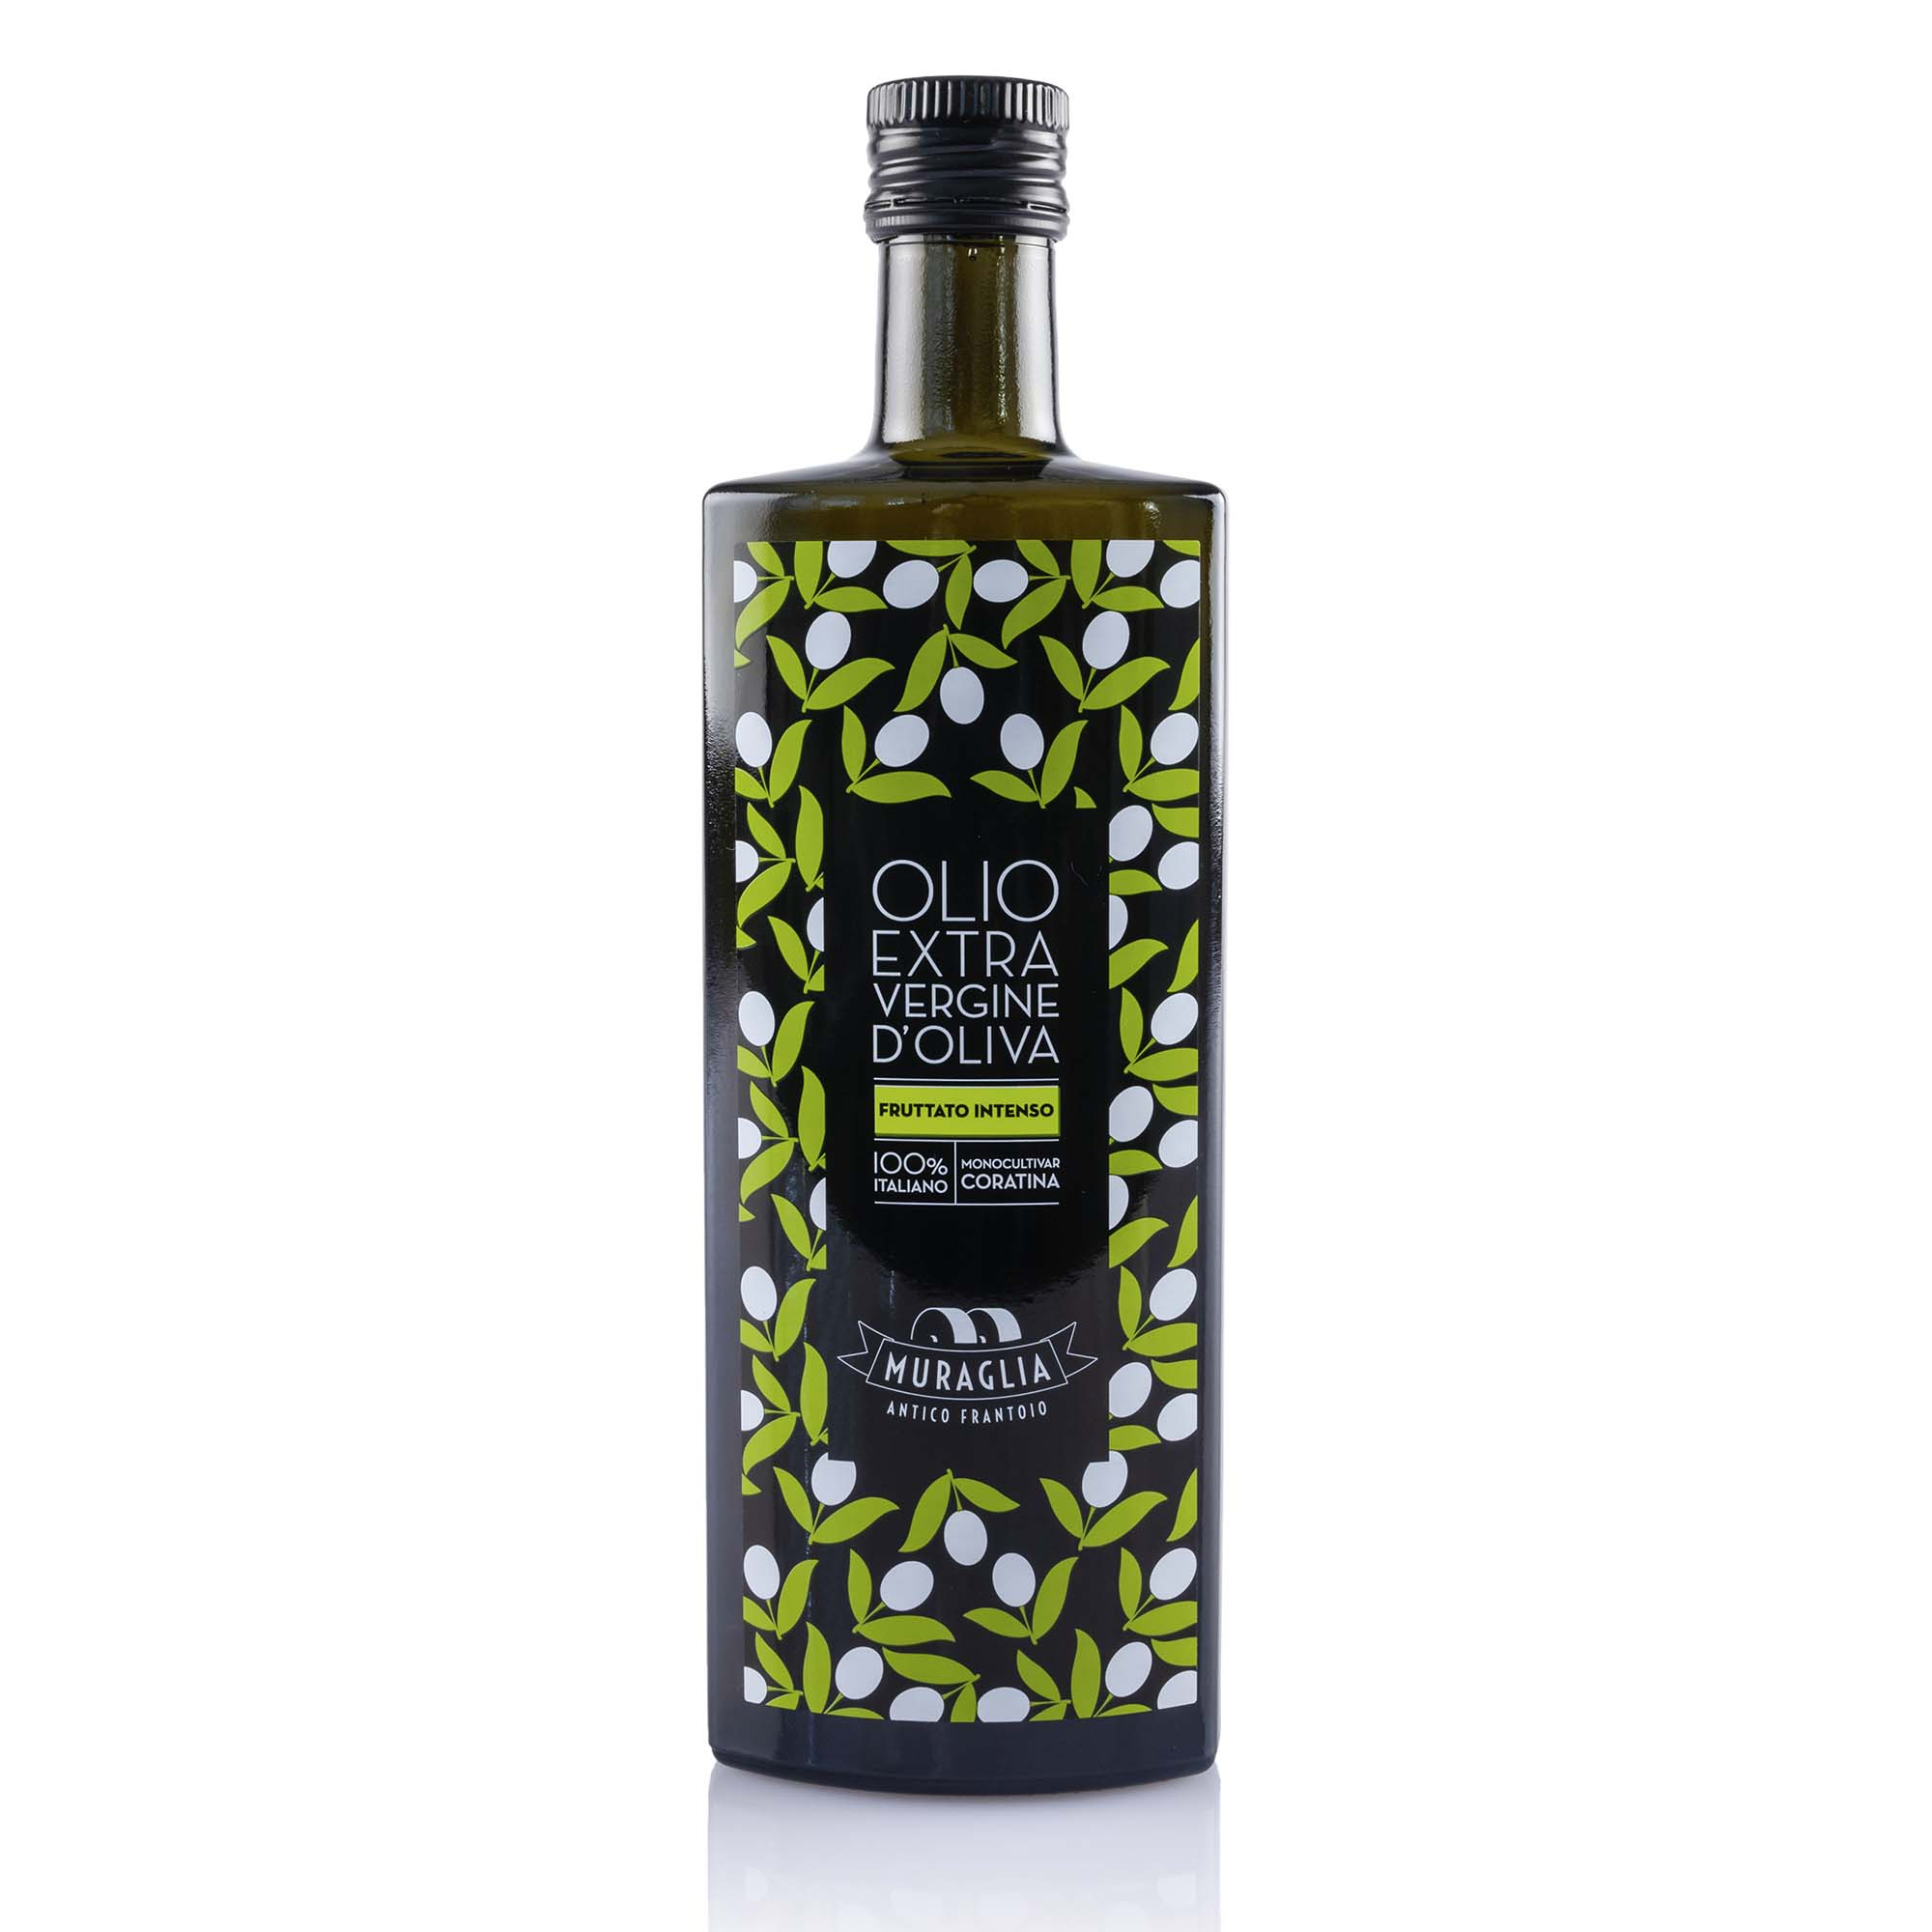 Olio extra vergine di oliva, Muraglia, 50cl